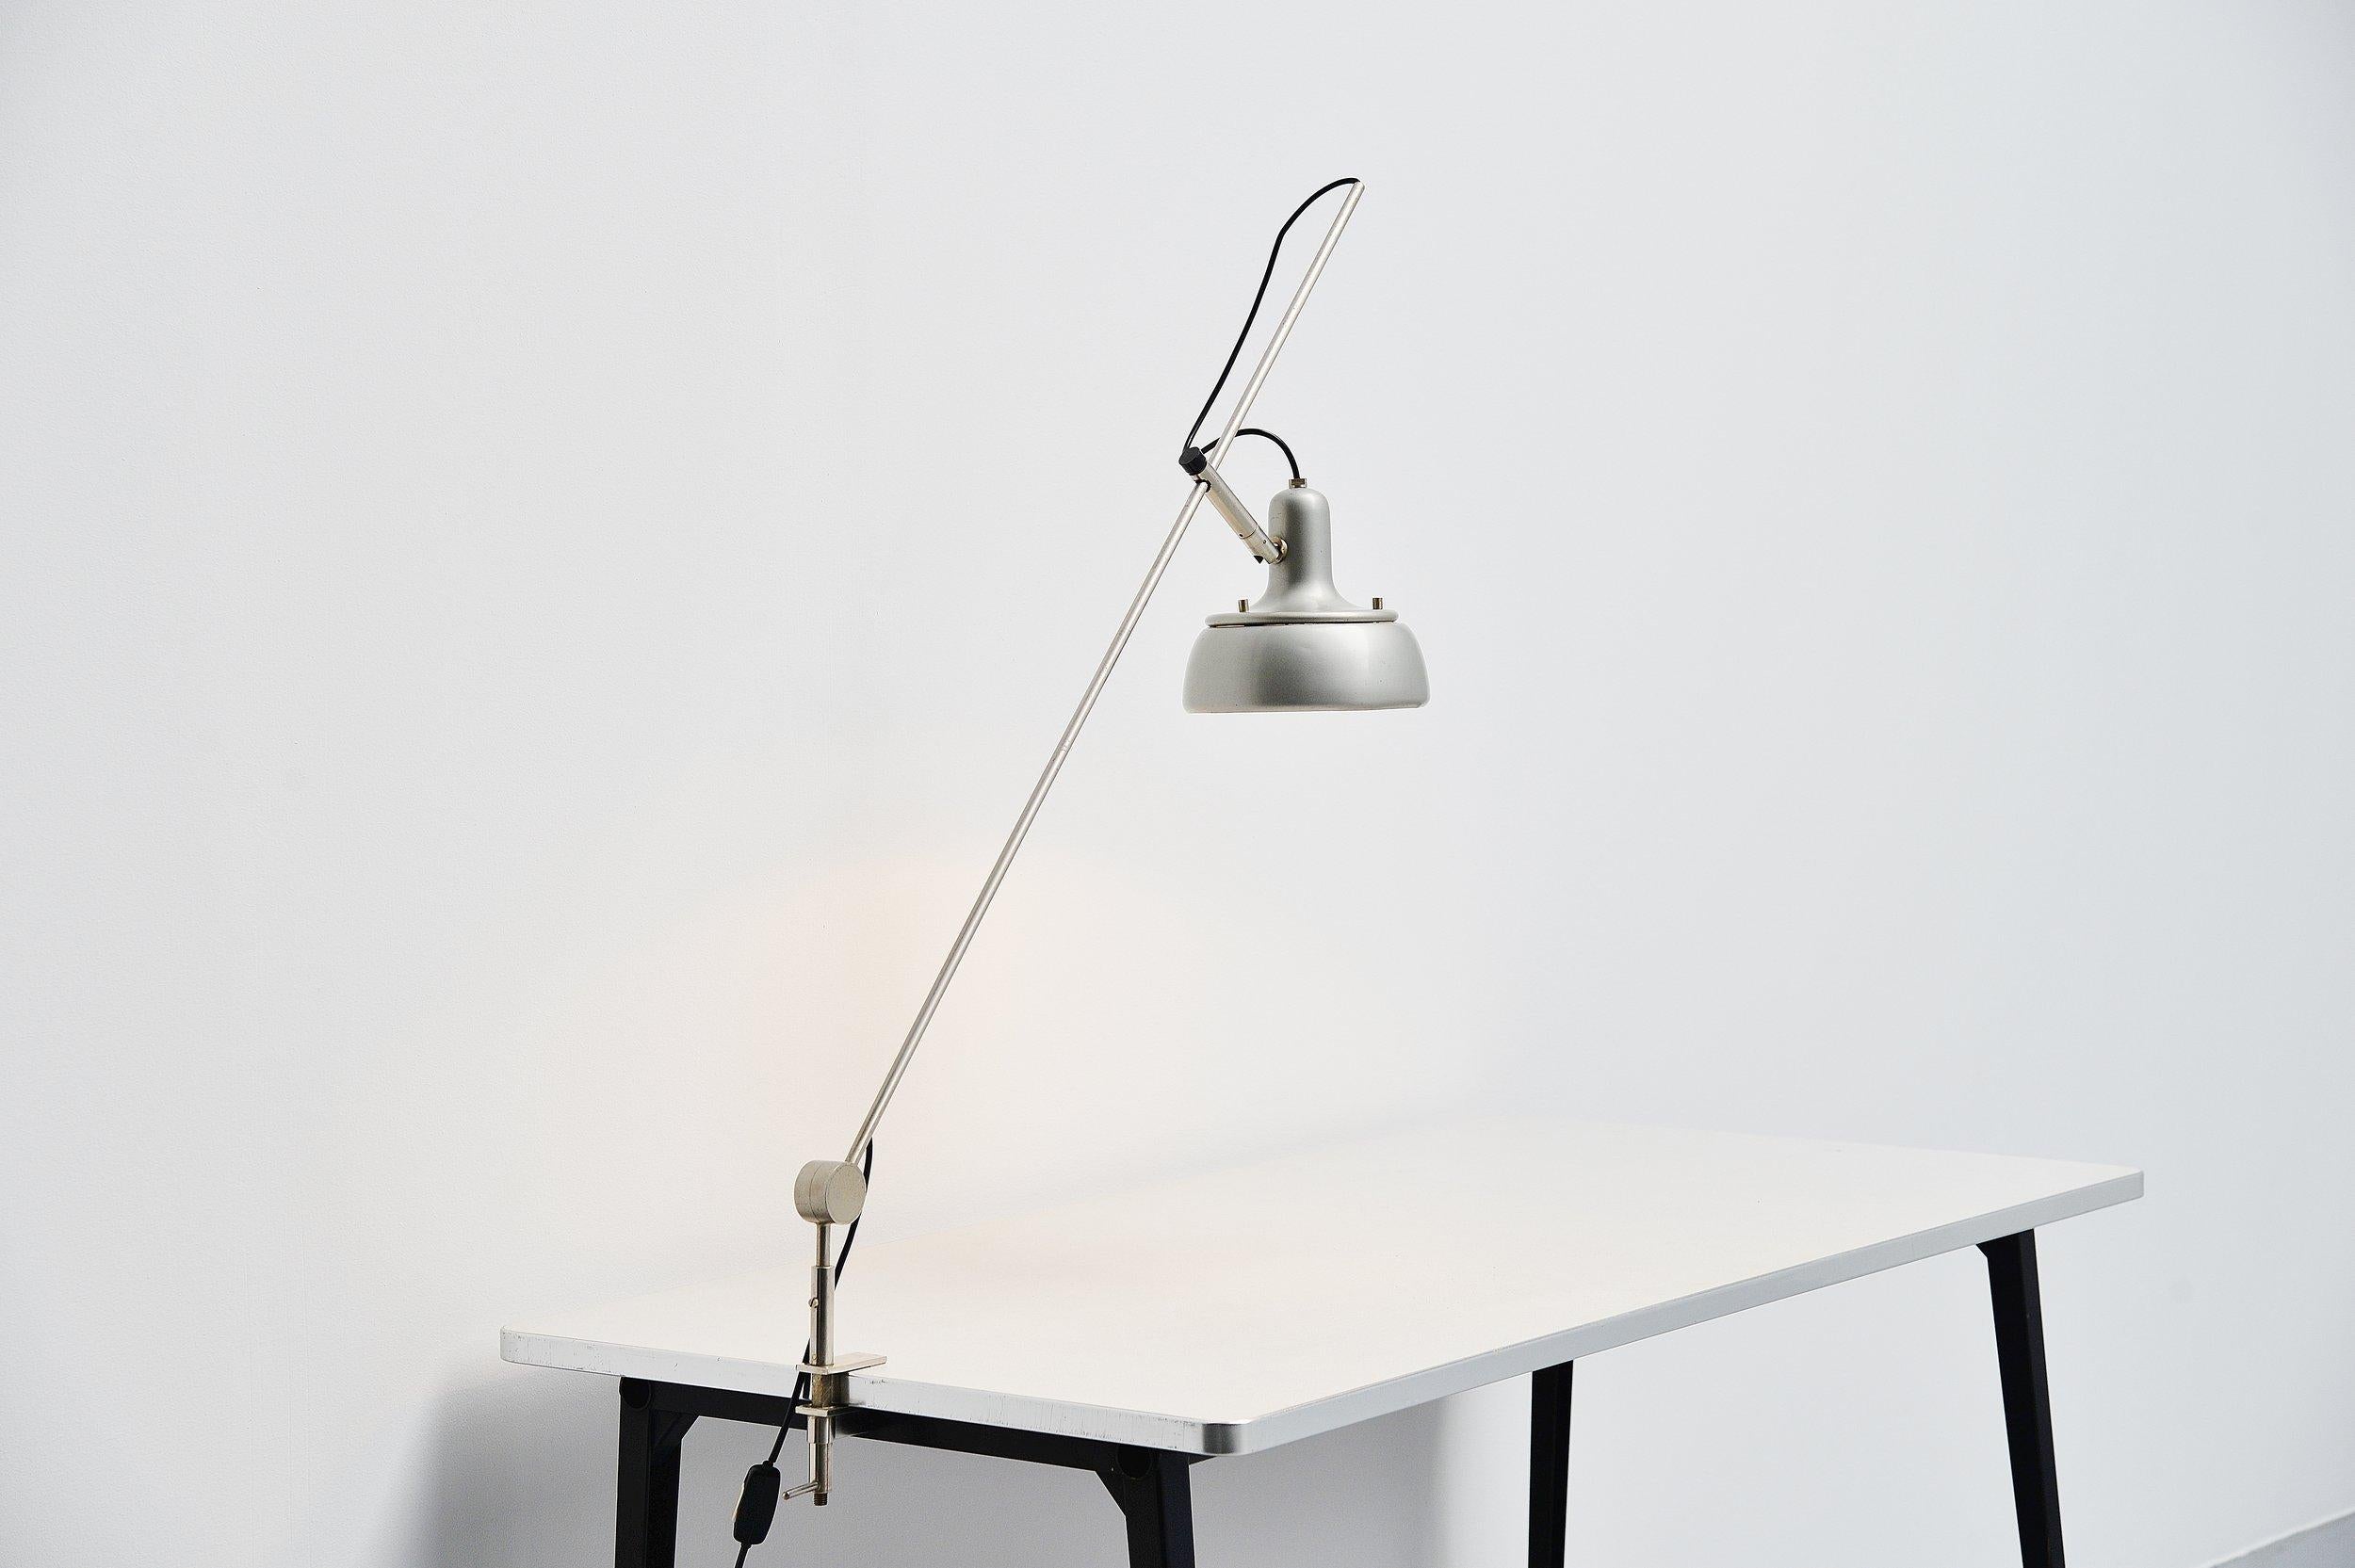 Très rare lampe de bureau à pince modèle 292-r conçue par Giuseppe Ostuni et fabriquée par Oluce, Italie 1950. Cette lampe est le précurseur d'une lampe de bureau similaire mais plus petite, conçue par Tito Agnoli, le modèle 255. Cette lampe est